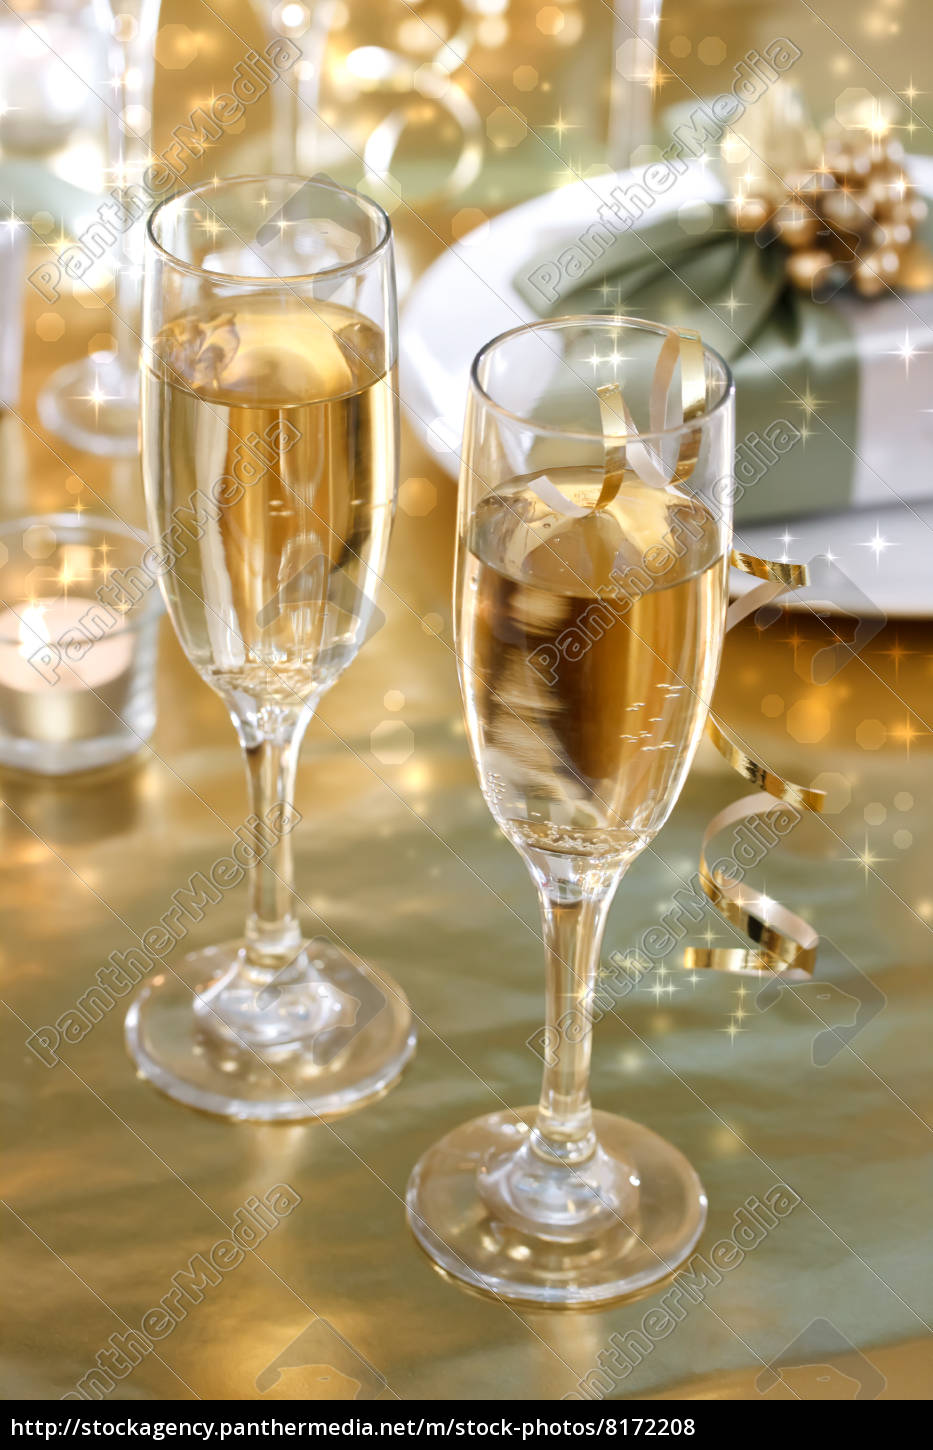 Bicchieri champagne sul tavolo da pranzo - Stockphoto #8172208